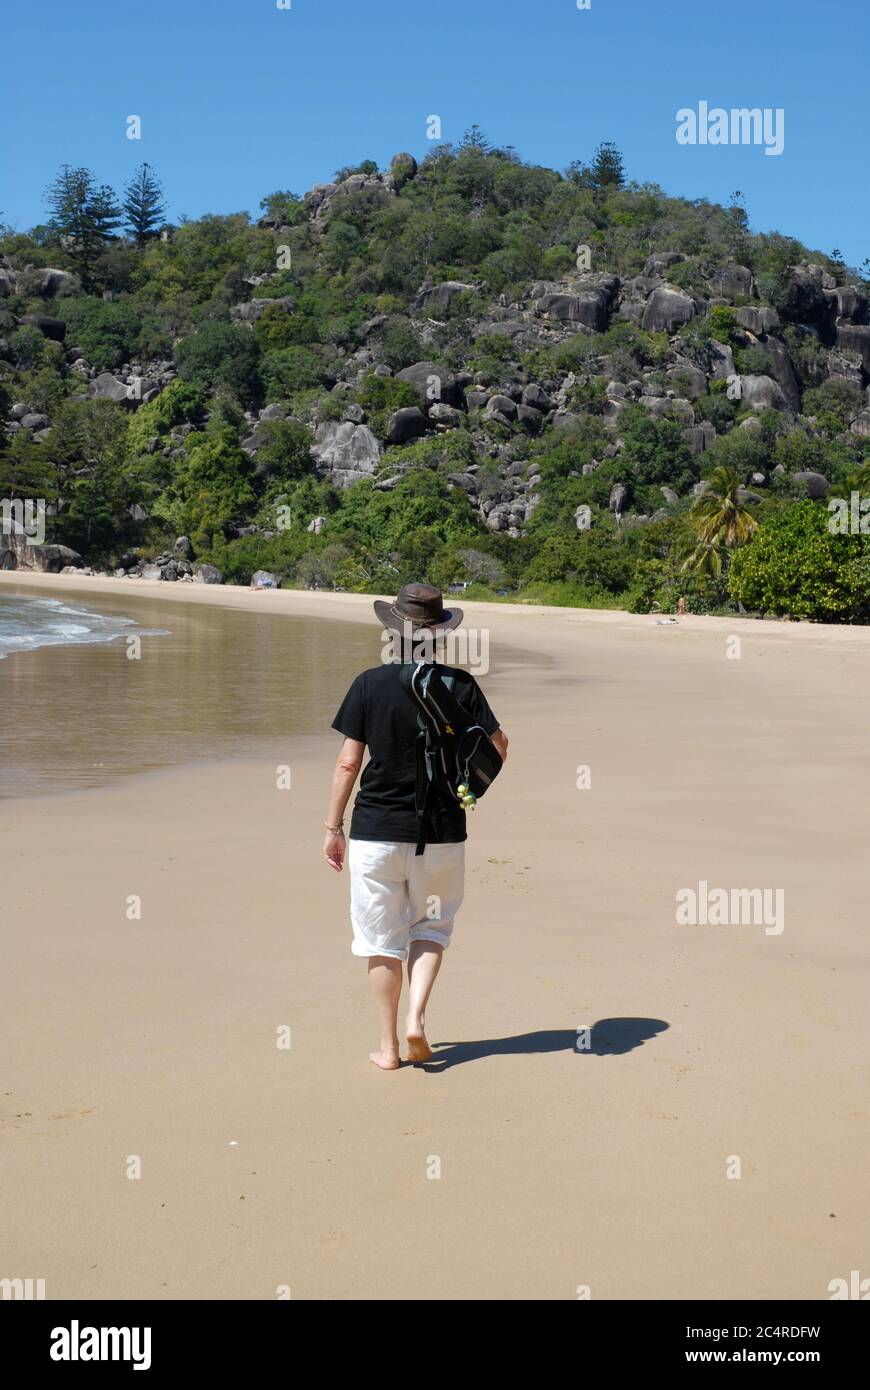 Vue arrière d'une femme qui s'éloigne avec un ukulele sur son épaule, sur la plage de radical Bay sur l'île Magentic, Queensland, Australie Banque D'Images